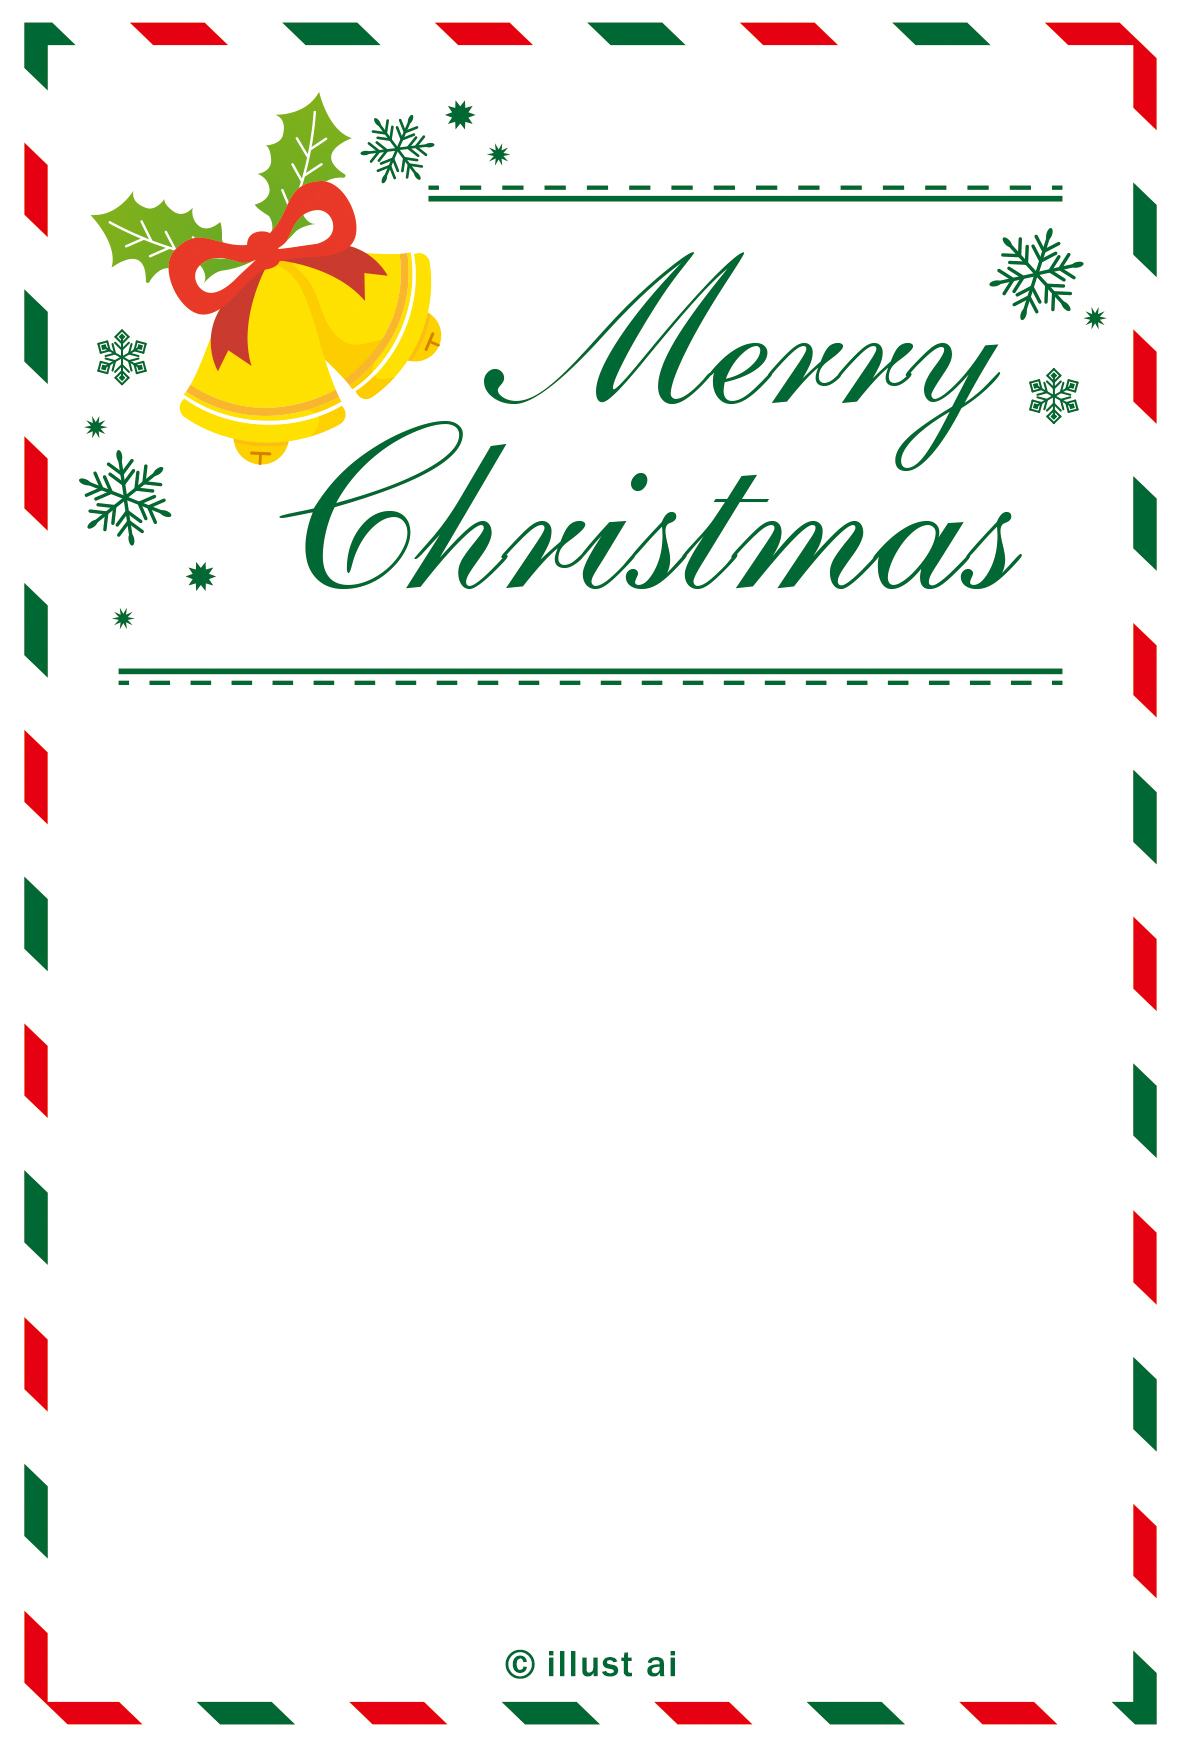 クリスマスカードテンプレート ポストカード イラスト素材サイト イラストareira Postcard Template